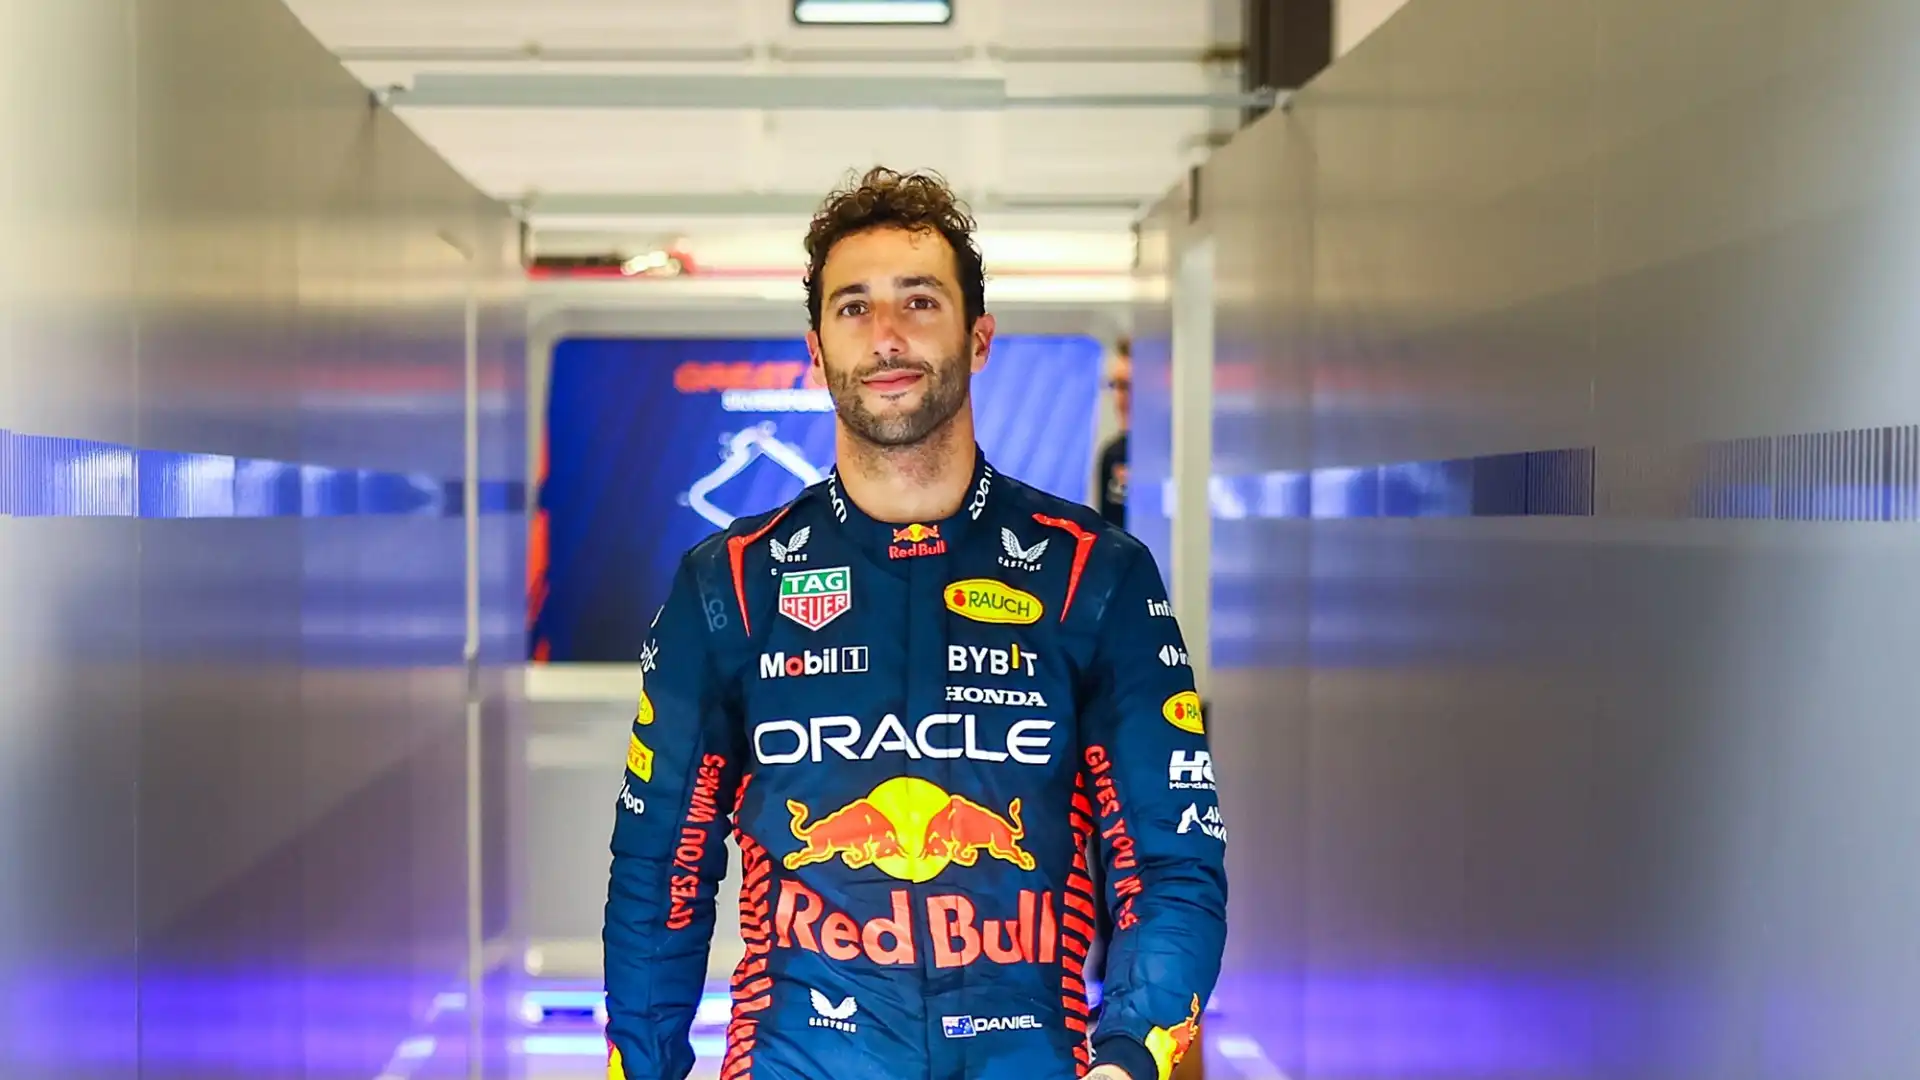 La clausola permetterebbe al pilota australiano di passare alla Red Bull dopo le prime gare del prossimo anno, se Sergio Perez non migliorasse le proprie prestazioni